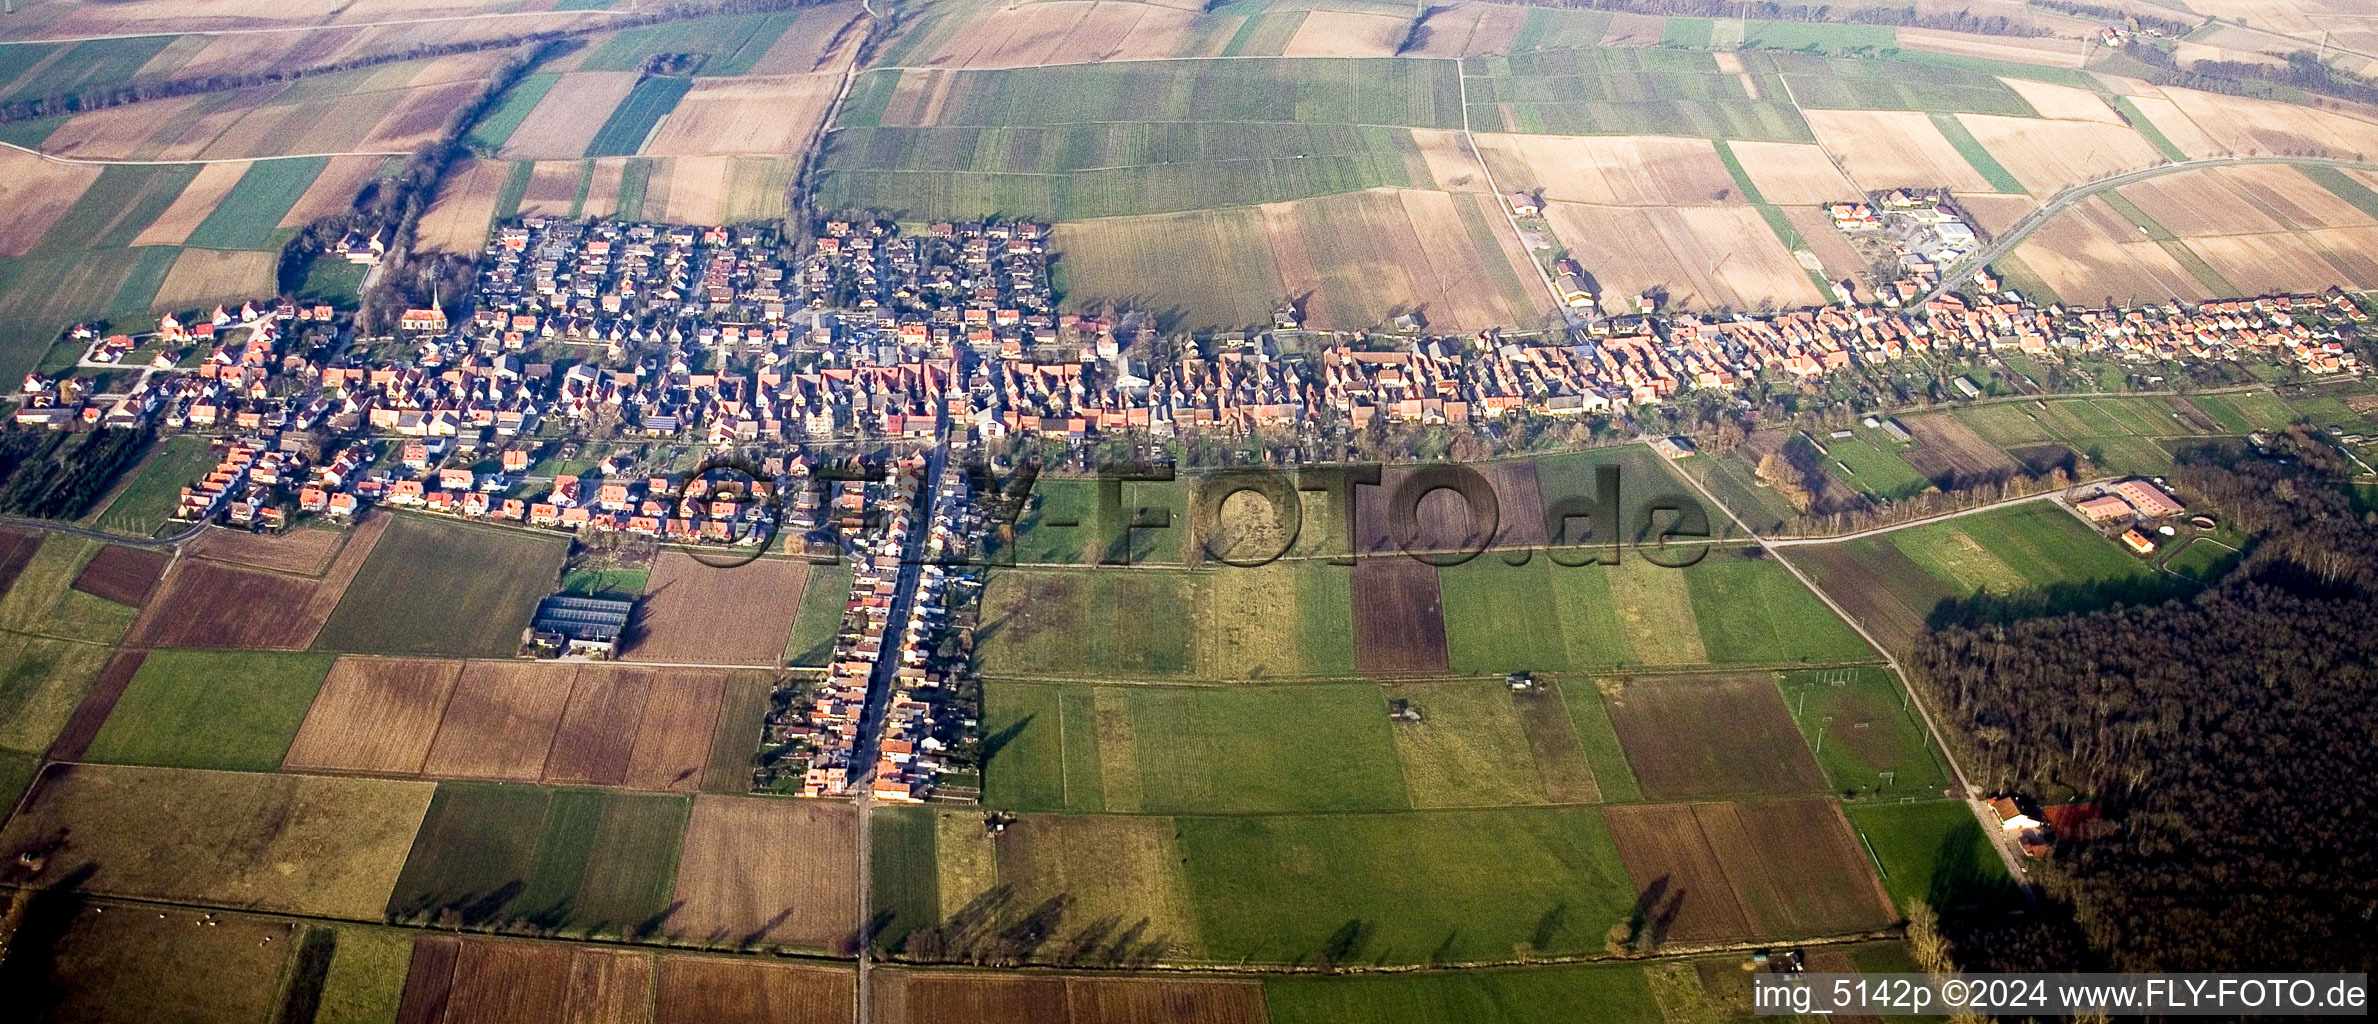 Vue aérienne de Perspective circonférentielle et horizontale à 360 degrés des champs agricoles et des zones utilisables à Freckenfeld dans le département Rhénanie-Palatinat, Allemagne